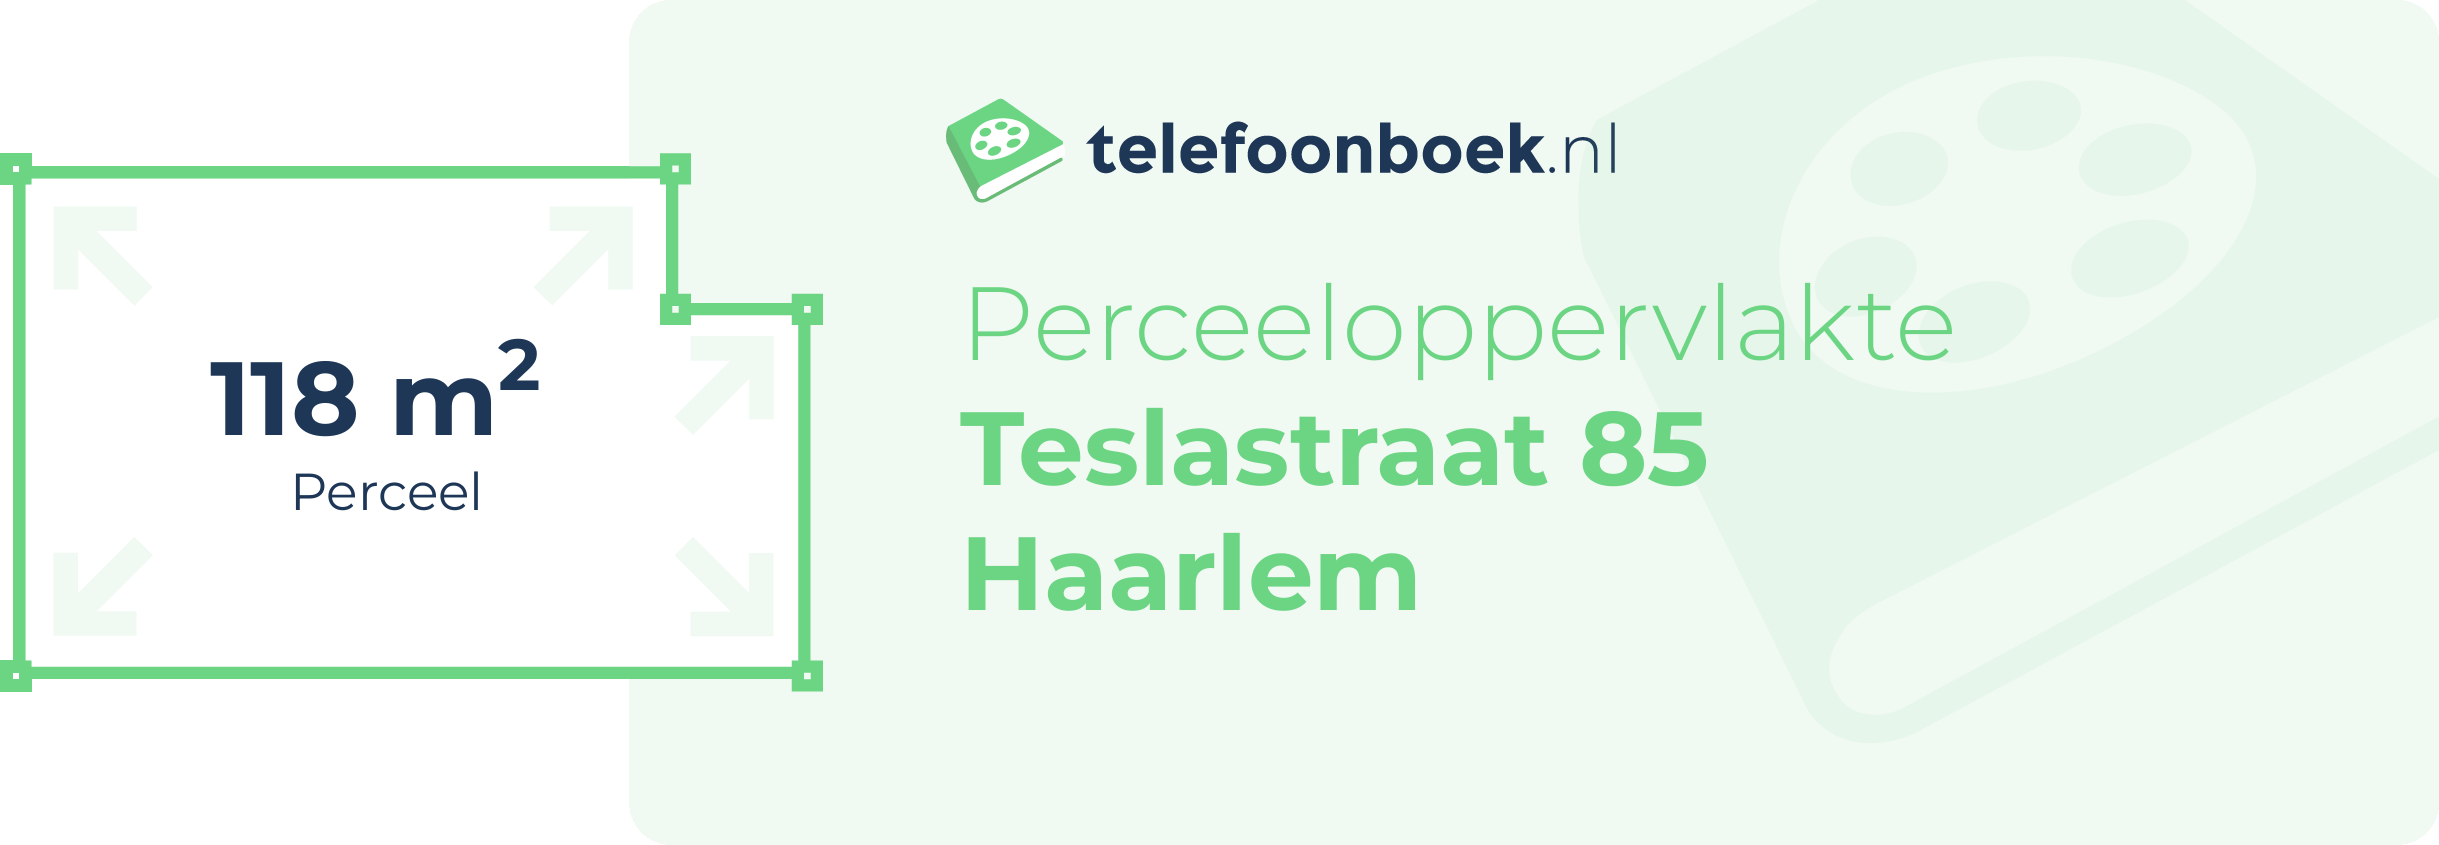 Perceeloppervlakte Teslastraat 85 Haarlem